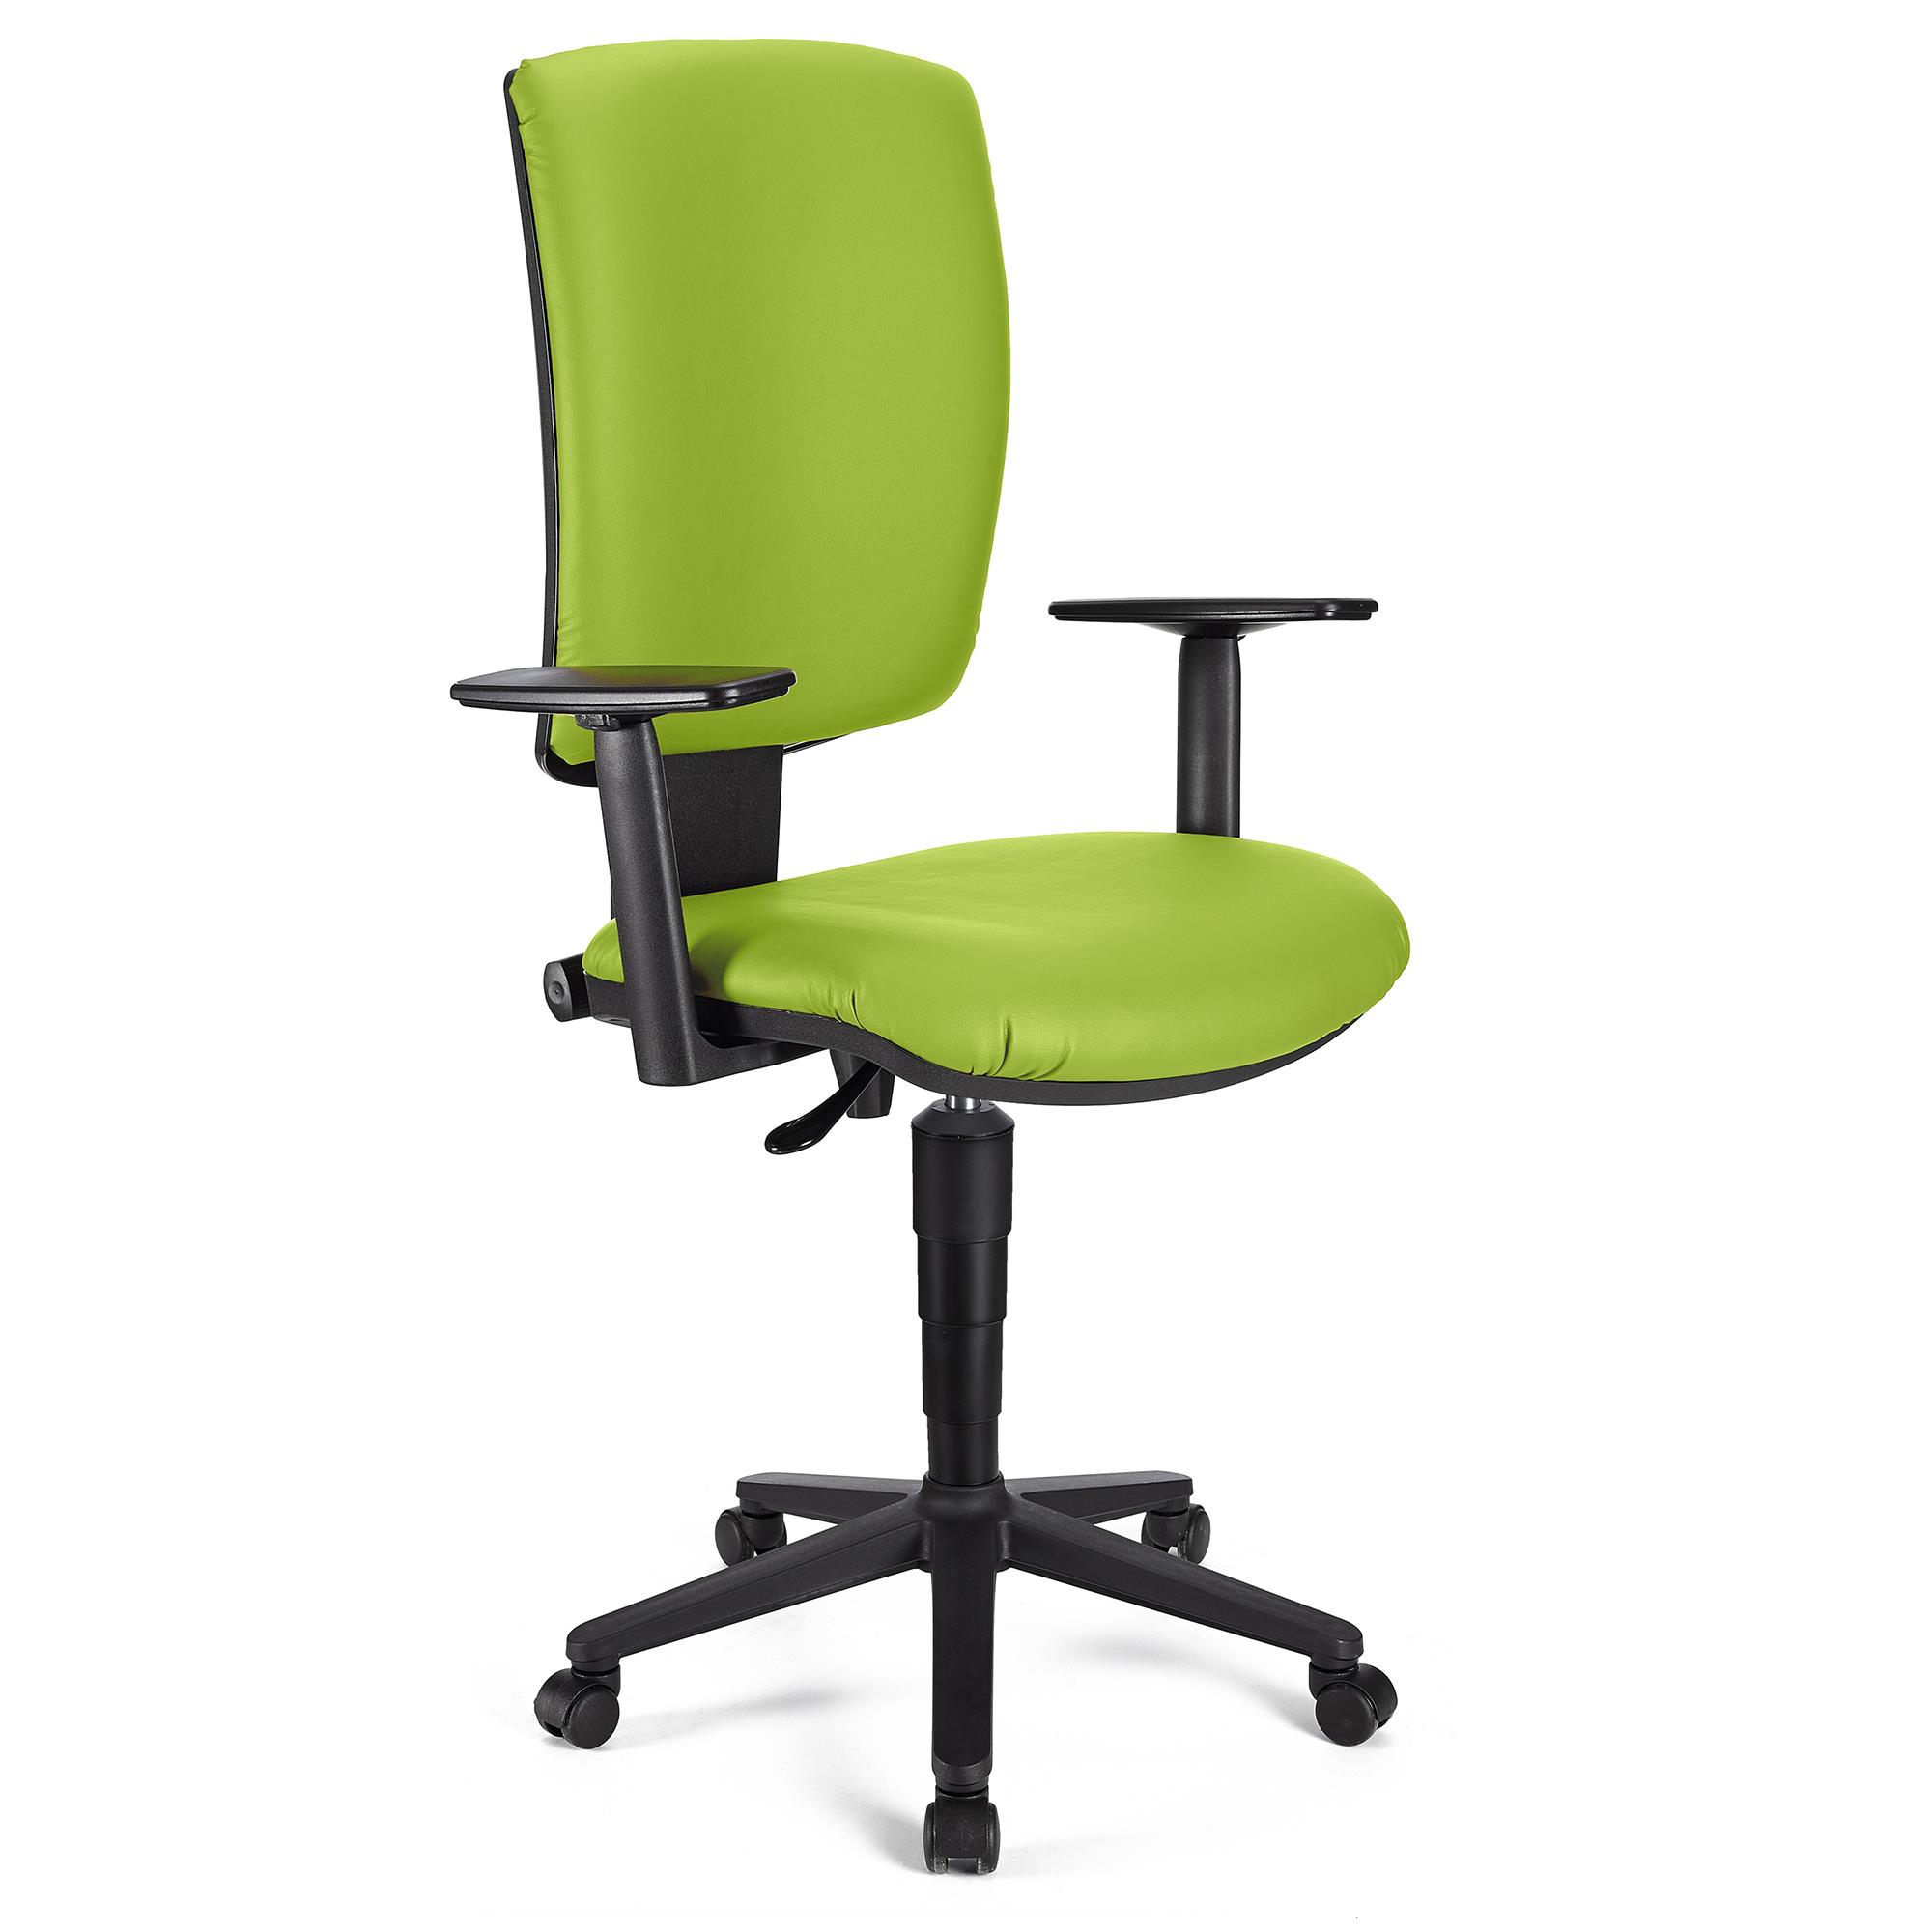 Bürostuhl ATLAS PLUS LEDER, verstellbare Rücken- und Armlehnen, dicke Polsterung, Farbe Grün